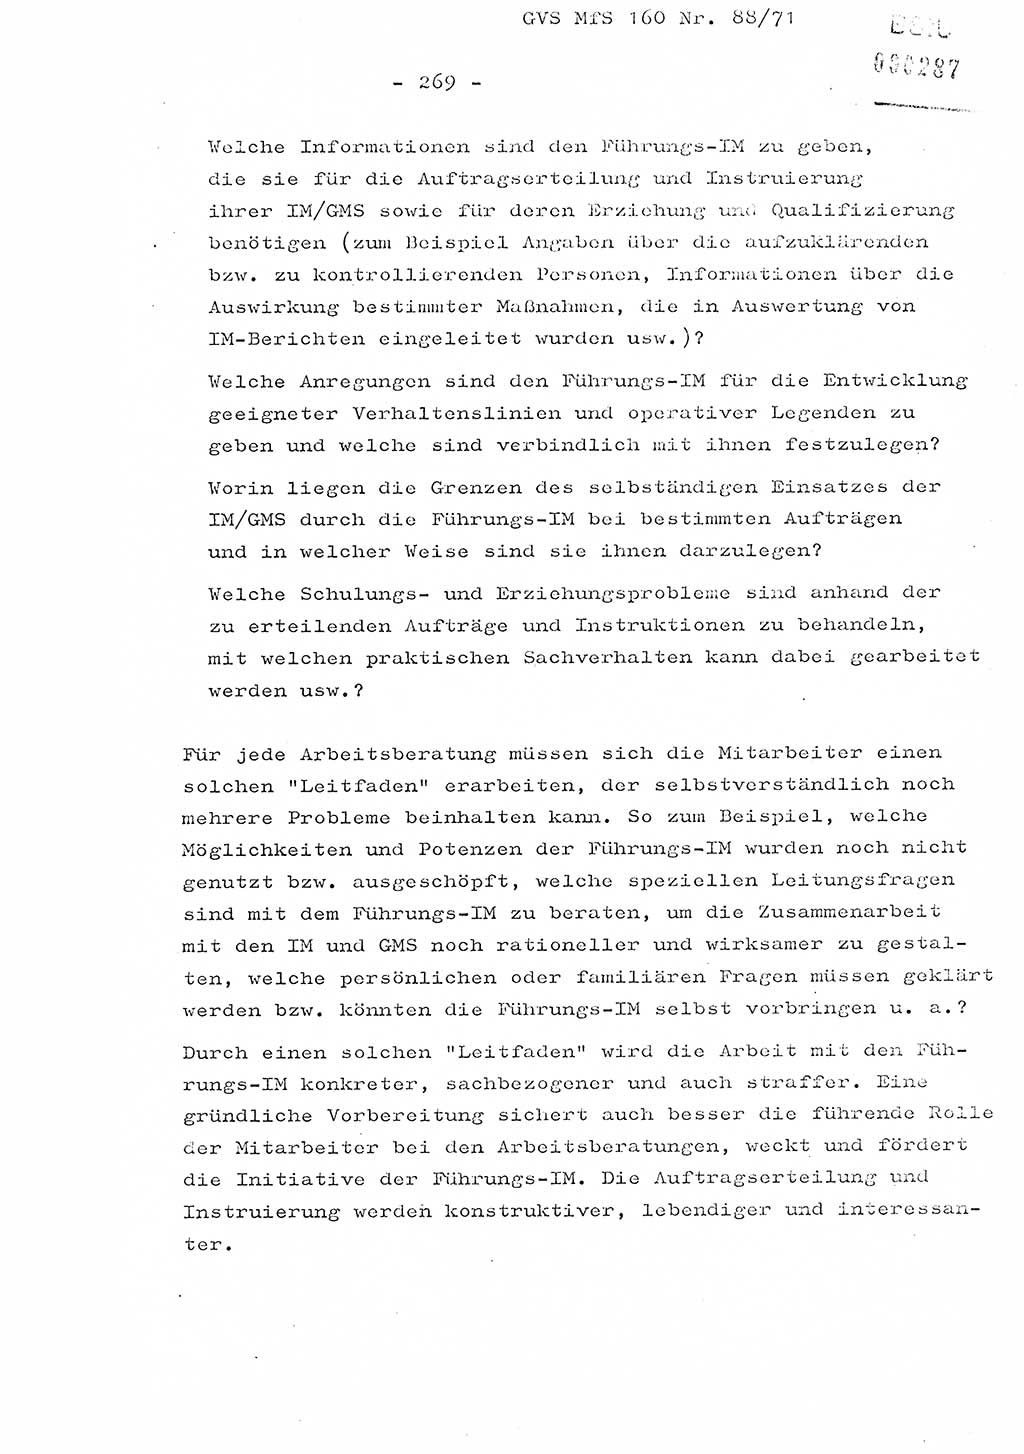 Dissertation Oberstleutnant Josef Schwarz (BV Schwerin), Major Fritz Amm (JHS), Hauptmann Peter Gräßler (JHS), Ministerium für Staatssicherheit (MfS) [Deutsche Demokratische Republik (DDR)], Juristische Hochschule (JHS), Geheime Verschlußsache (GVS) 160-88/71, Potsdam 1972, Seite 269 (Diss. MfS DDR JHS GVS 160-88/71 1972, S. 269)